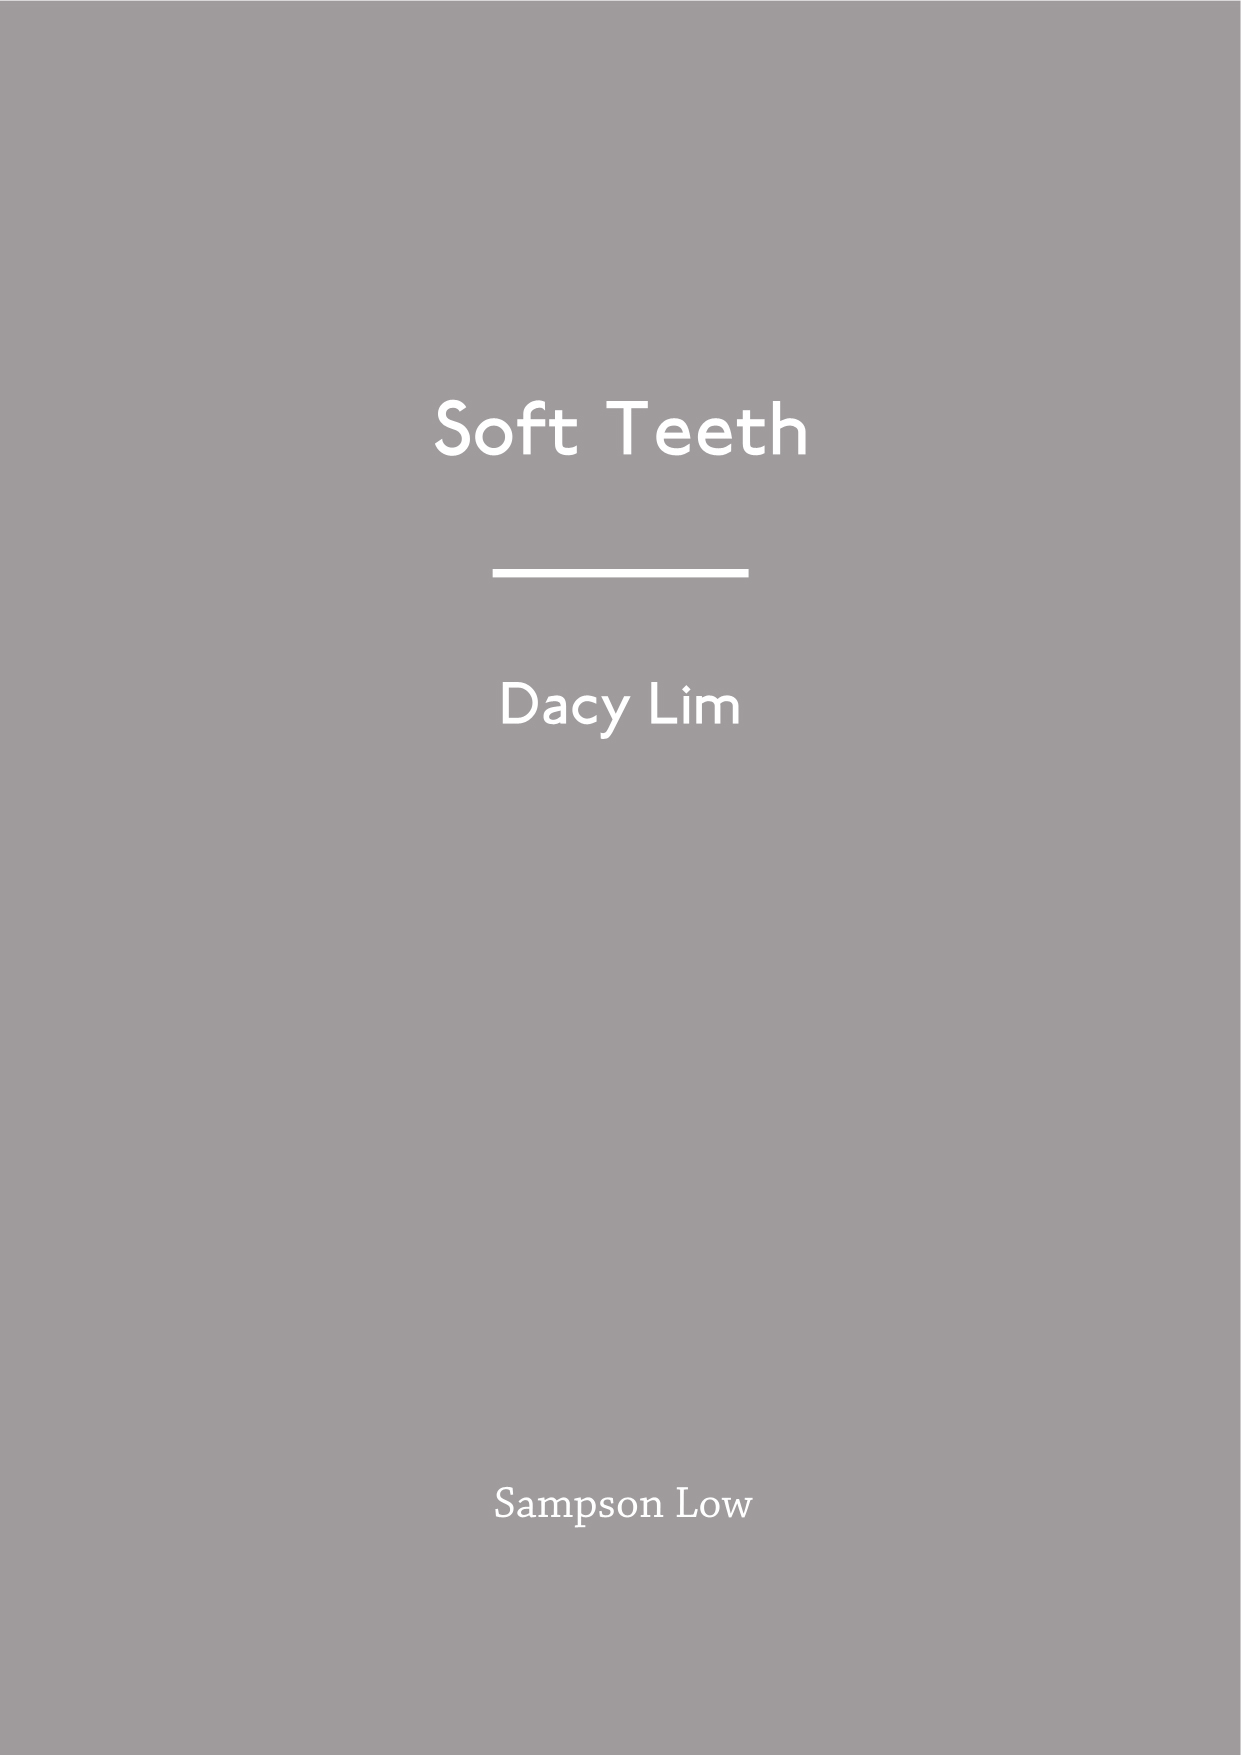 Soft_teeth_Dacy_Lim copy.jpg